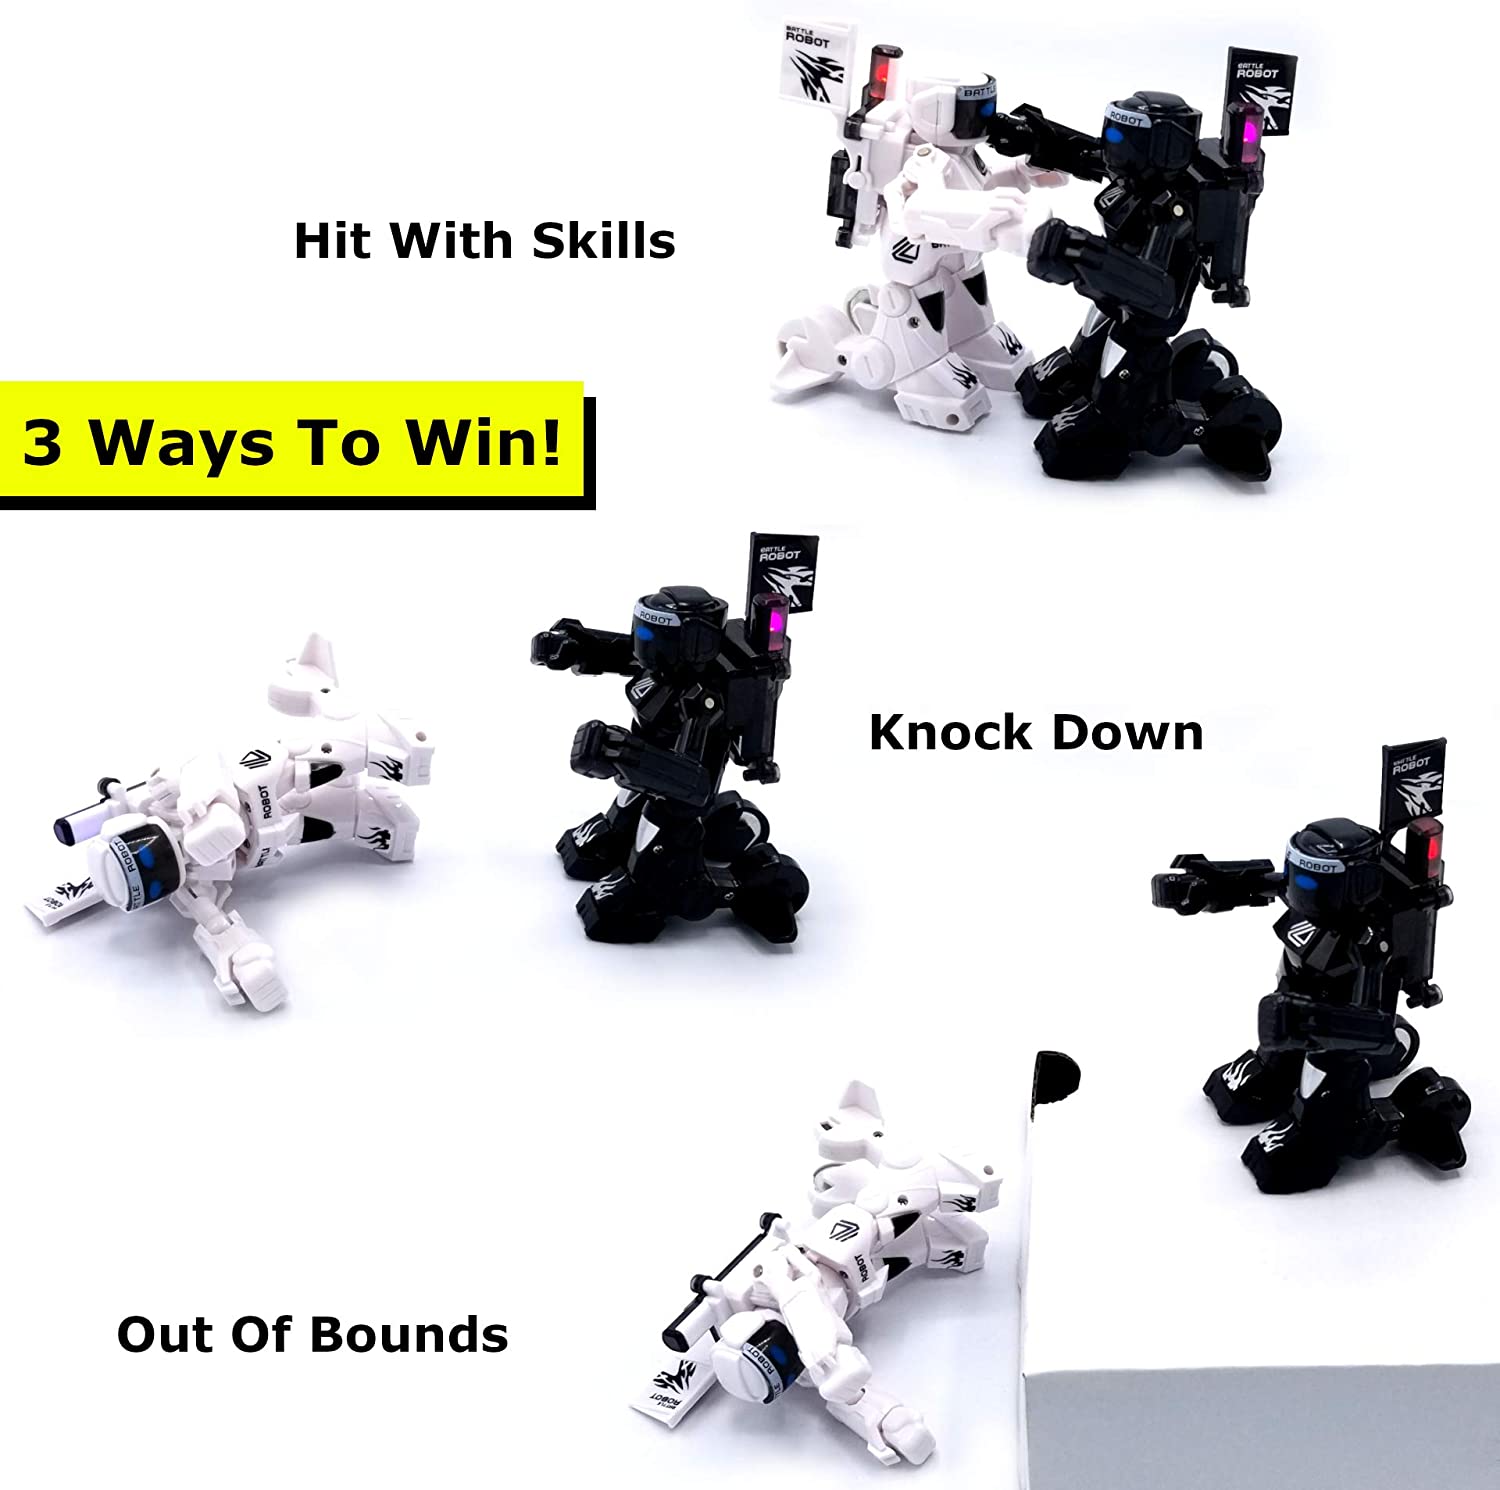 Kibtoy Mini Boxing Robots, Ninja warrior robots, RC boxing robots